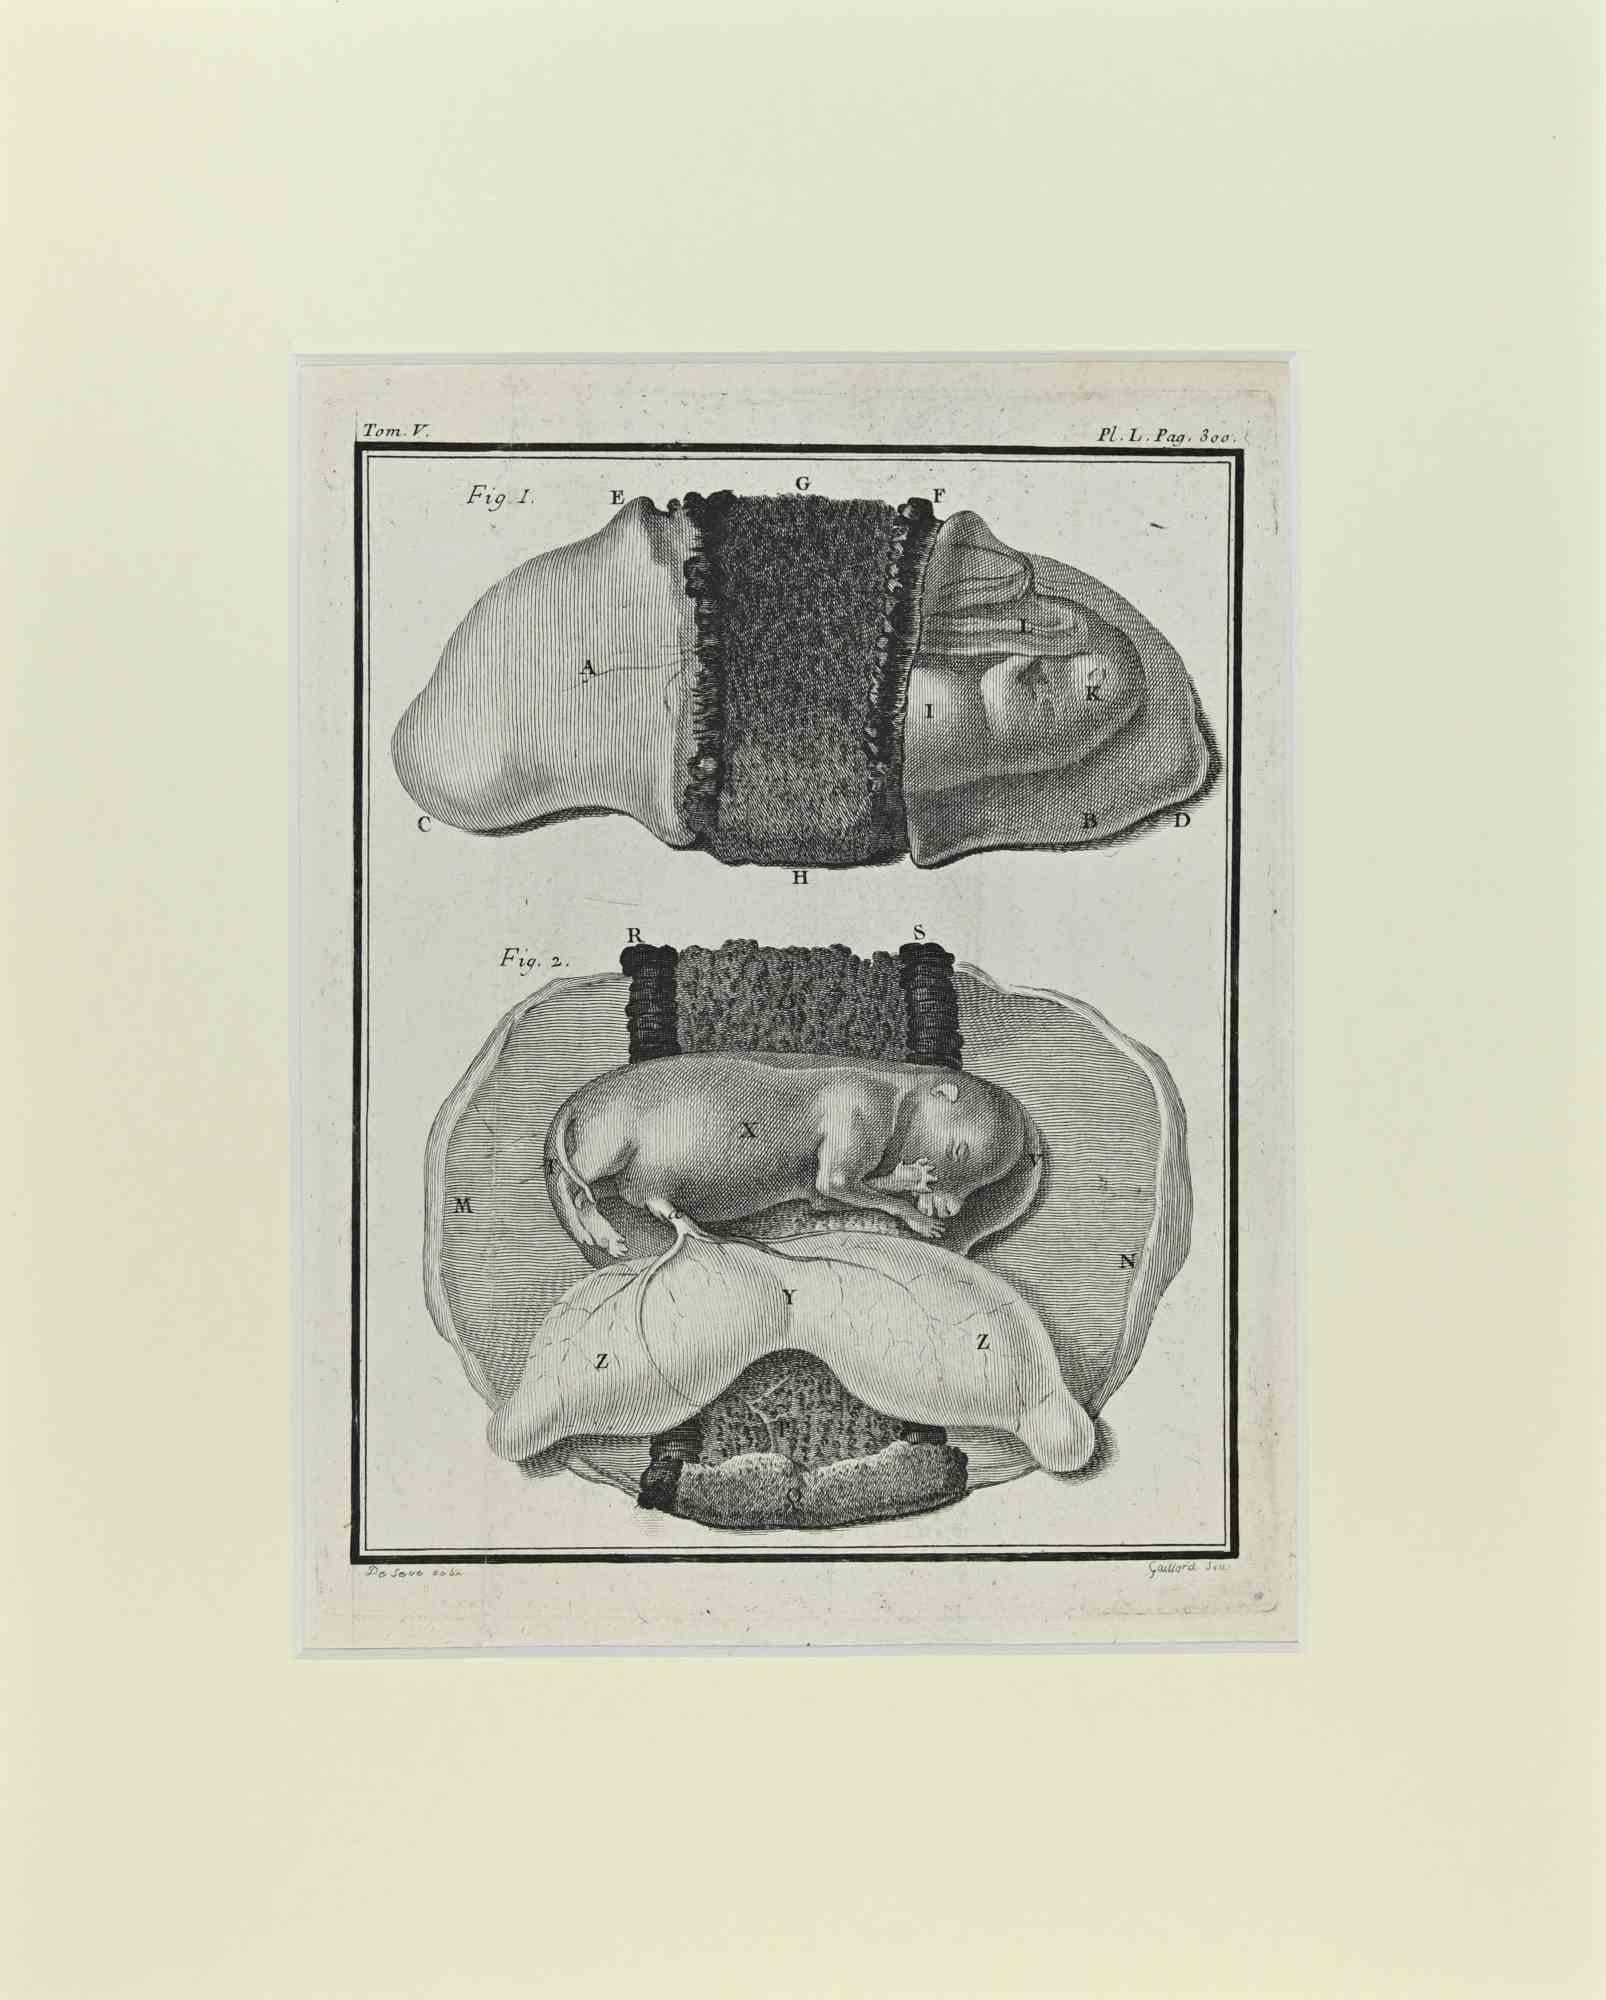 Jacques de Seve Figurative Print - Fetus - Dog - Etching by Jacques De Sève - 1771